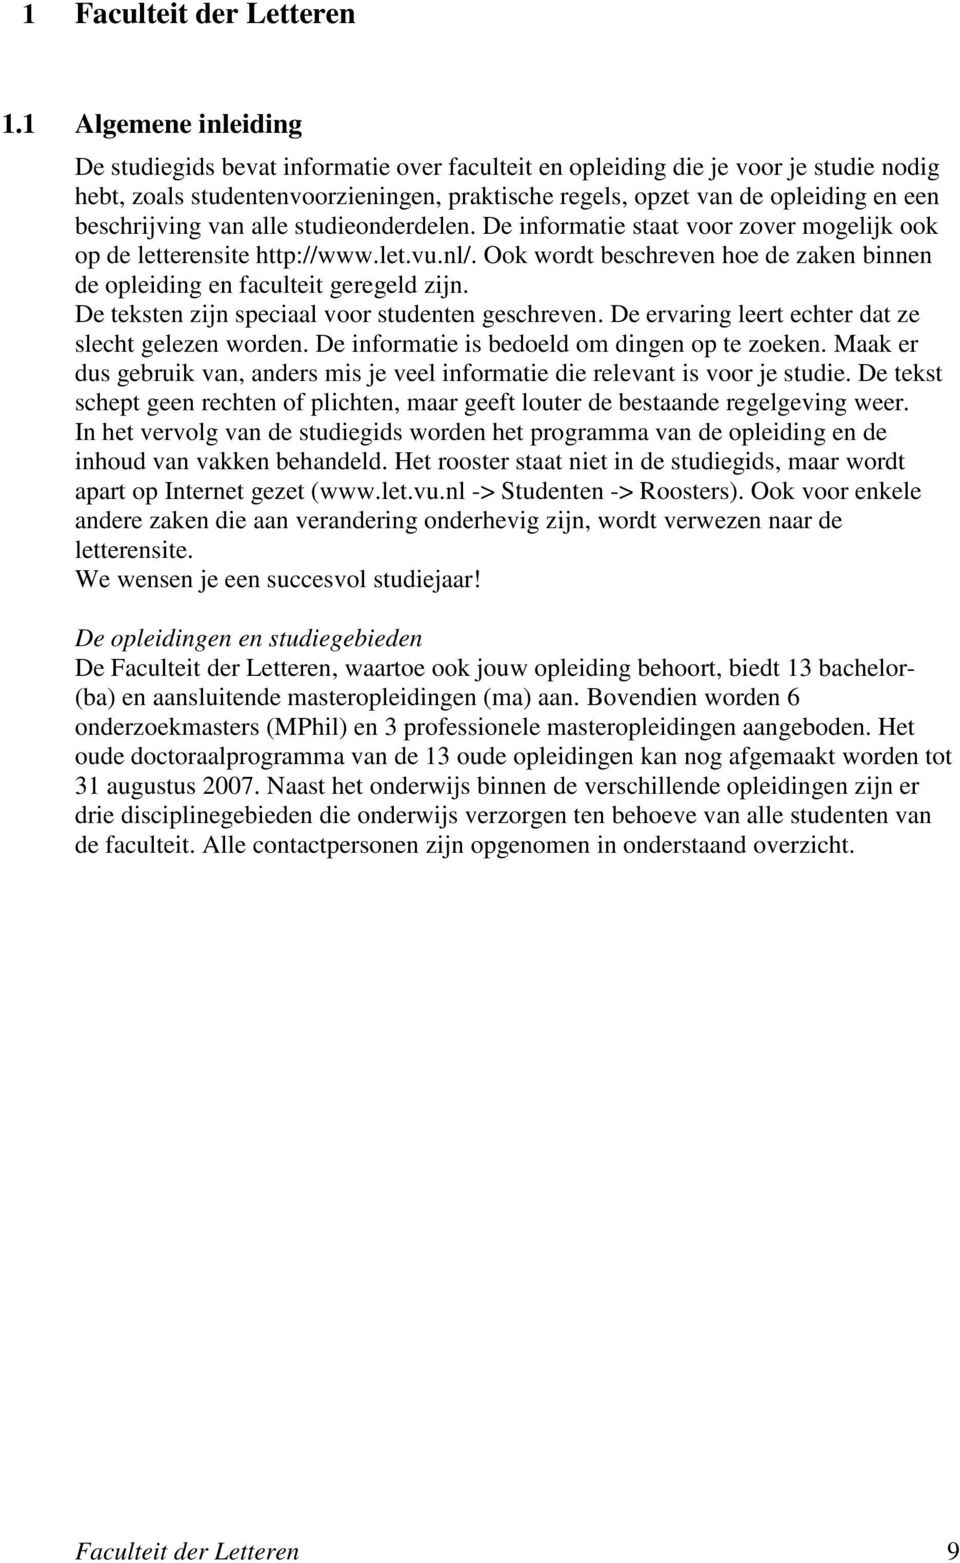 beschrijving van alle studieonderdelen. De informatie staat voor zover mogelijk ook op de letterensite http://www.let.vu.nl/.